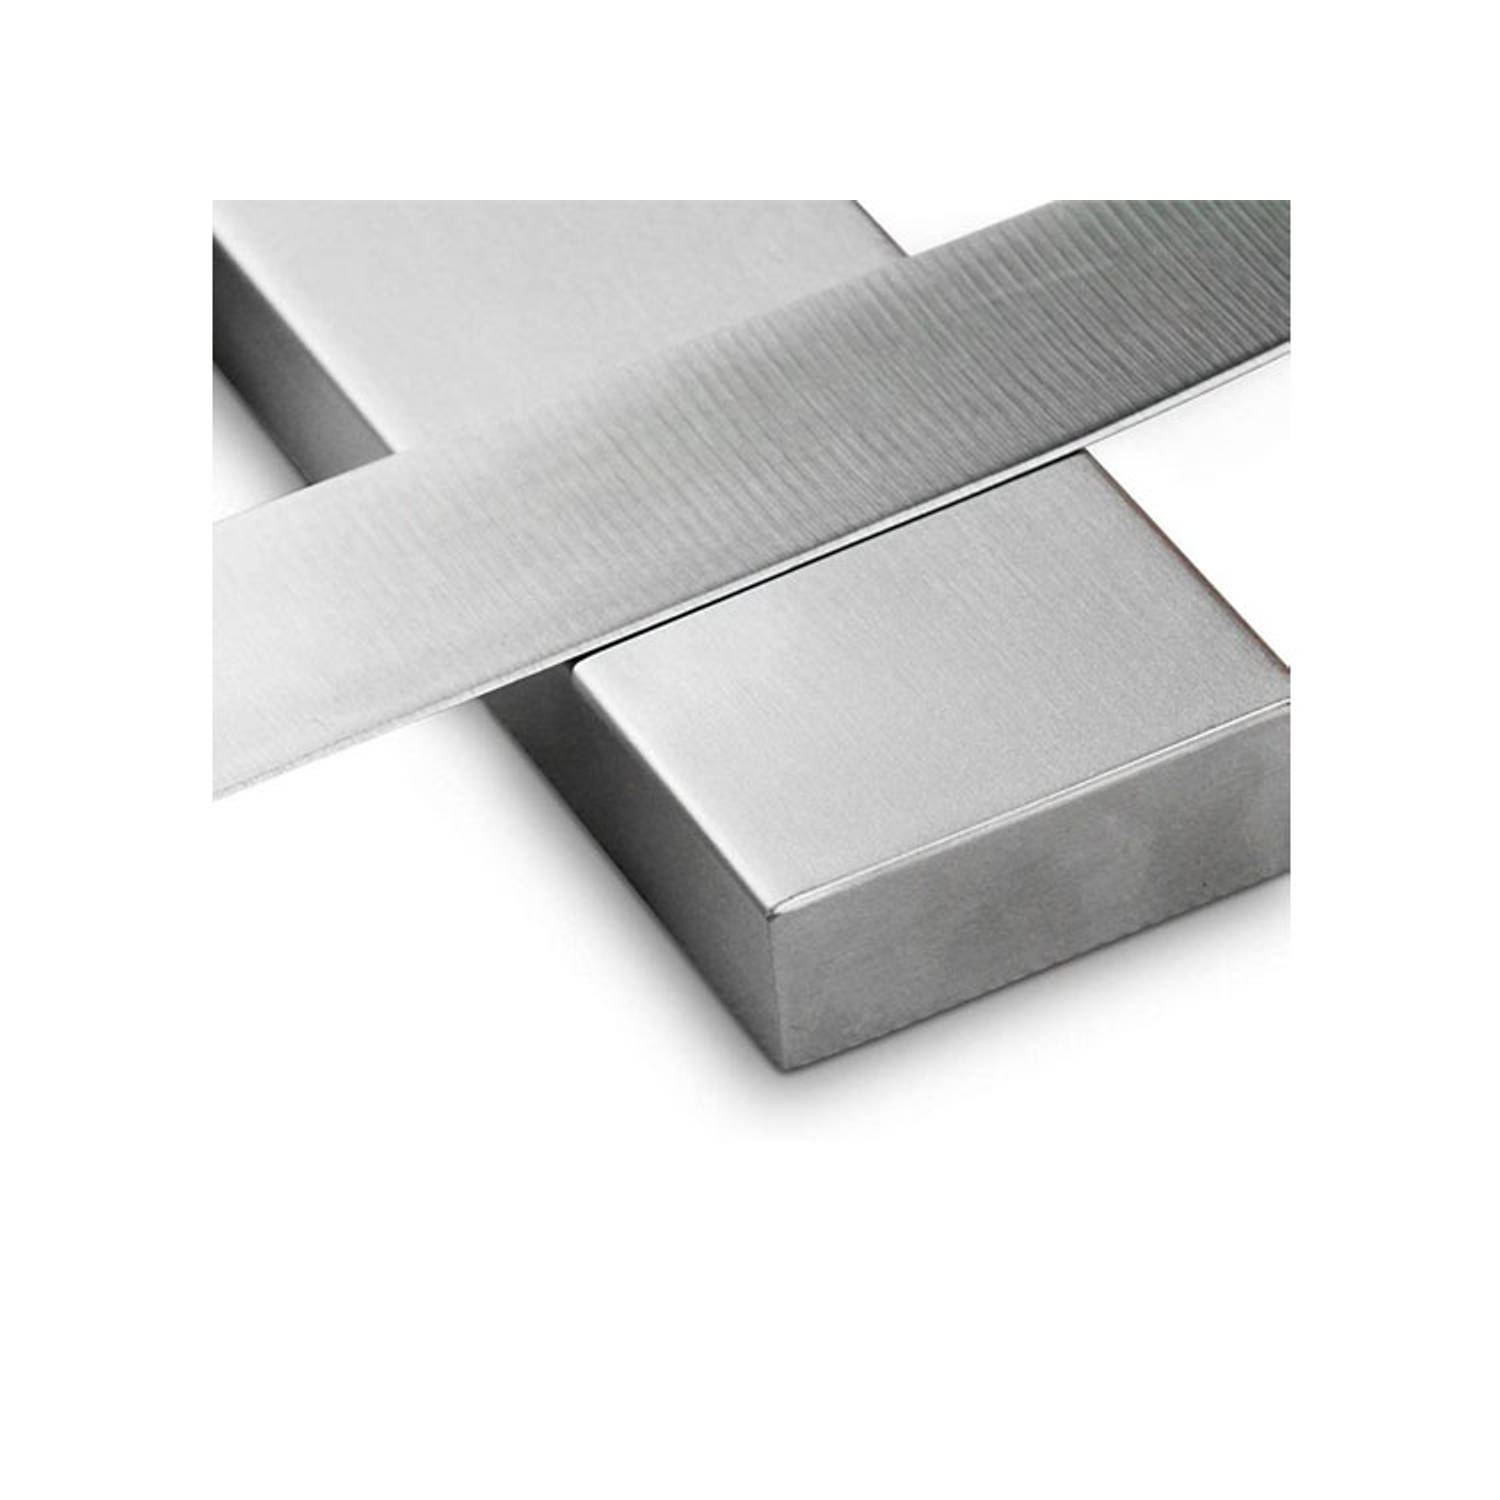 Messen magneet – 100% magnetische messenhouder – 40 4,7 cm |